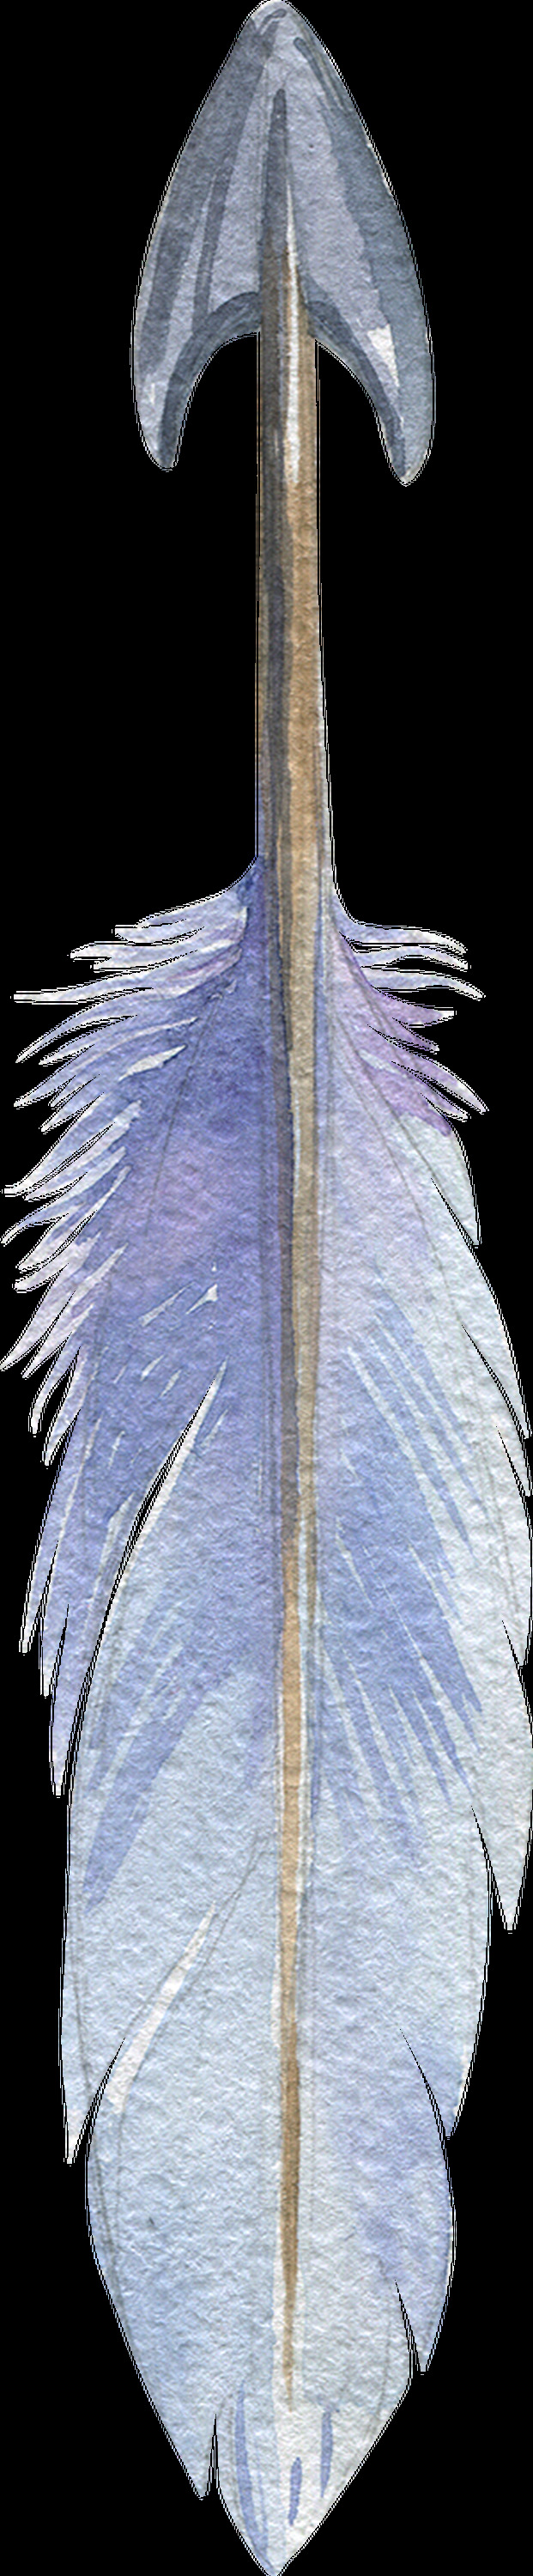 创意 羽毛 弓箭 卡通 透明 抠图专用 装饰 设计素材